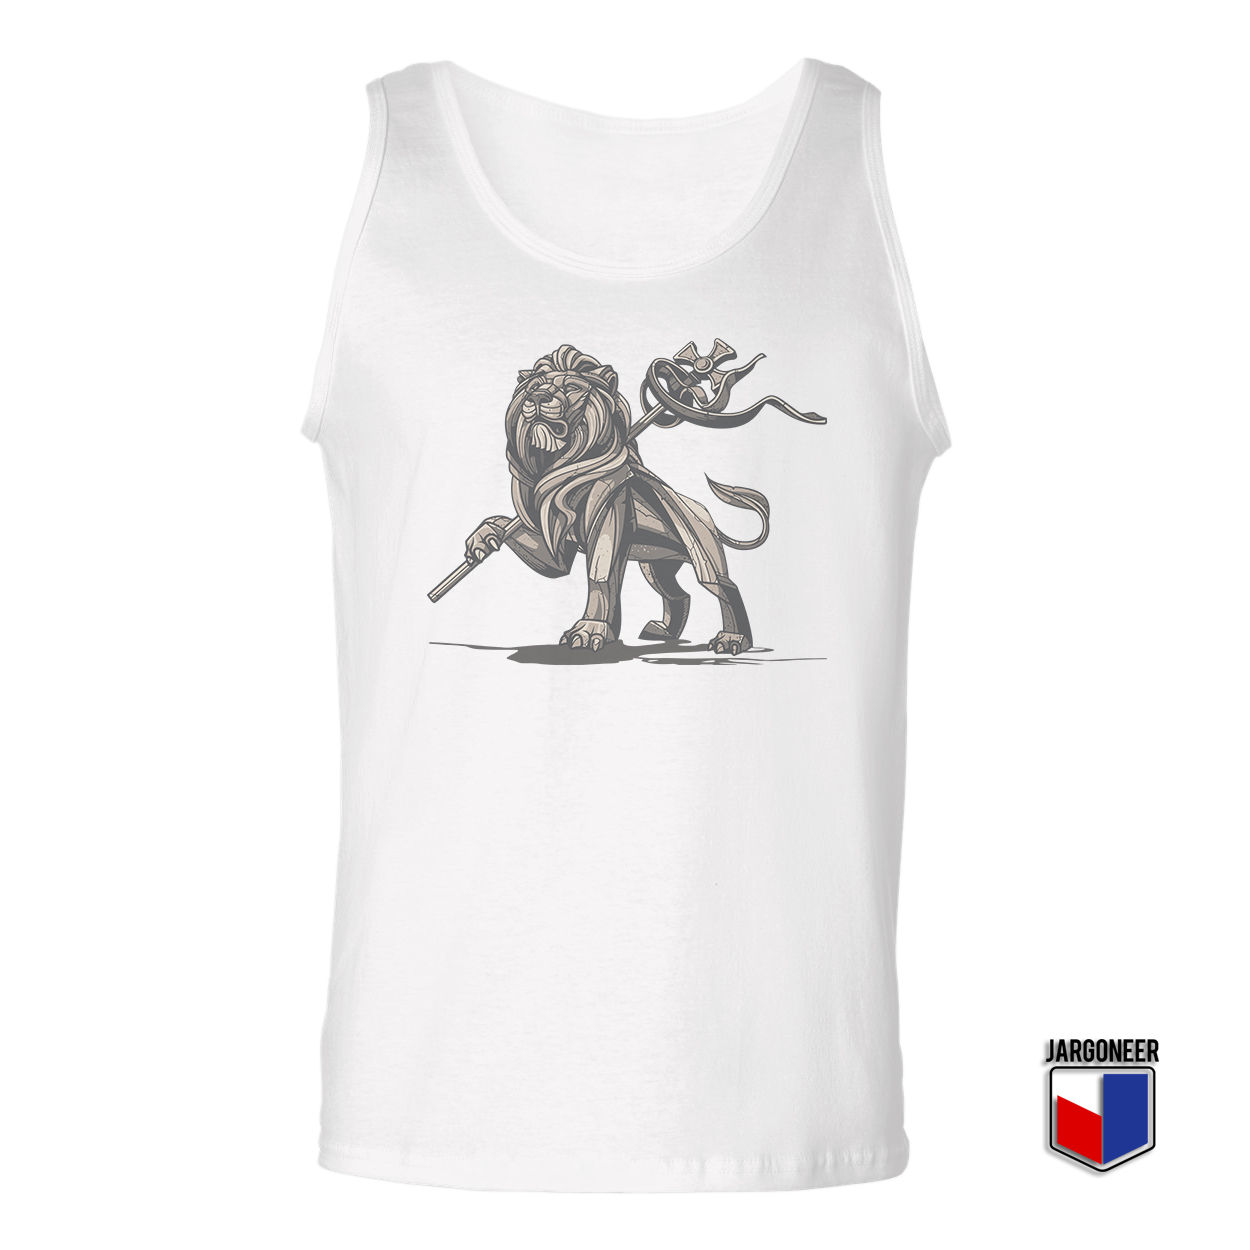 Lion Of Judah Statue White Tank Top - Shop Unique Graphic Cool Shirt Designs